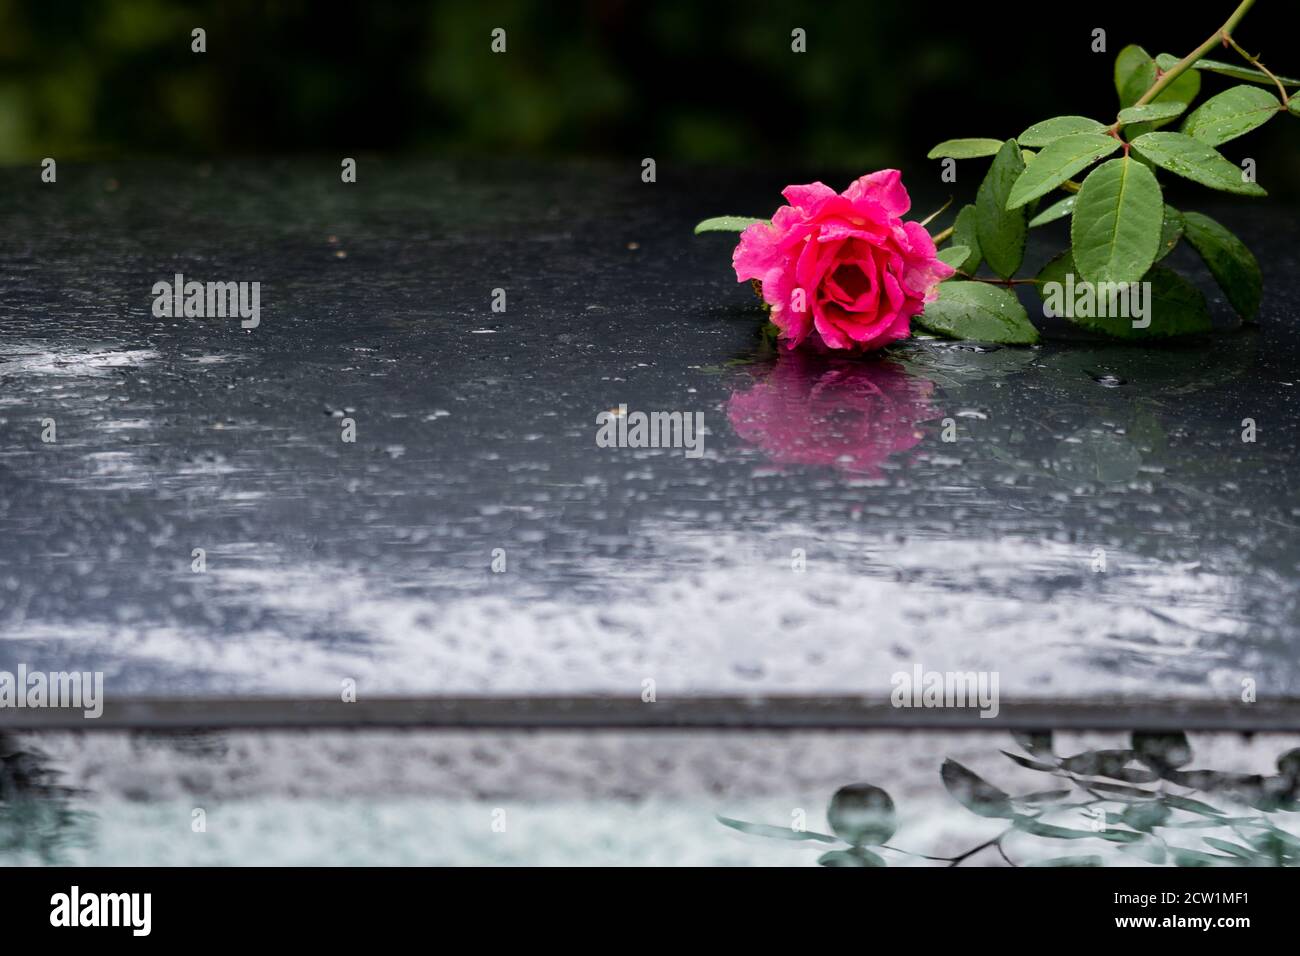 Rosa Rose auf nassem Auto. Reflexionen und Wassertropfen auf dem Dach des grauen Autos am regnerischen septembertag. Stockfoto